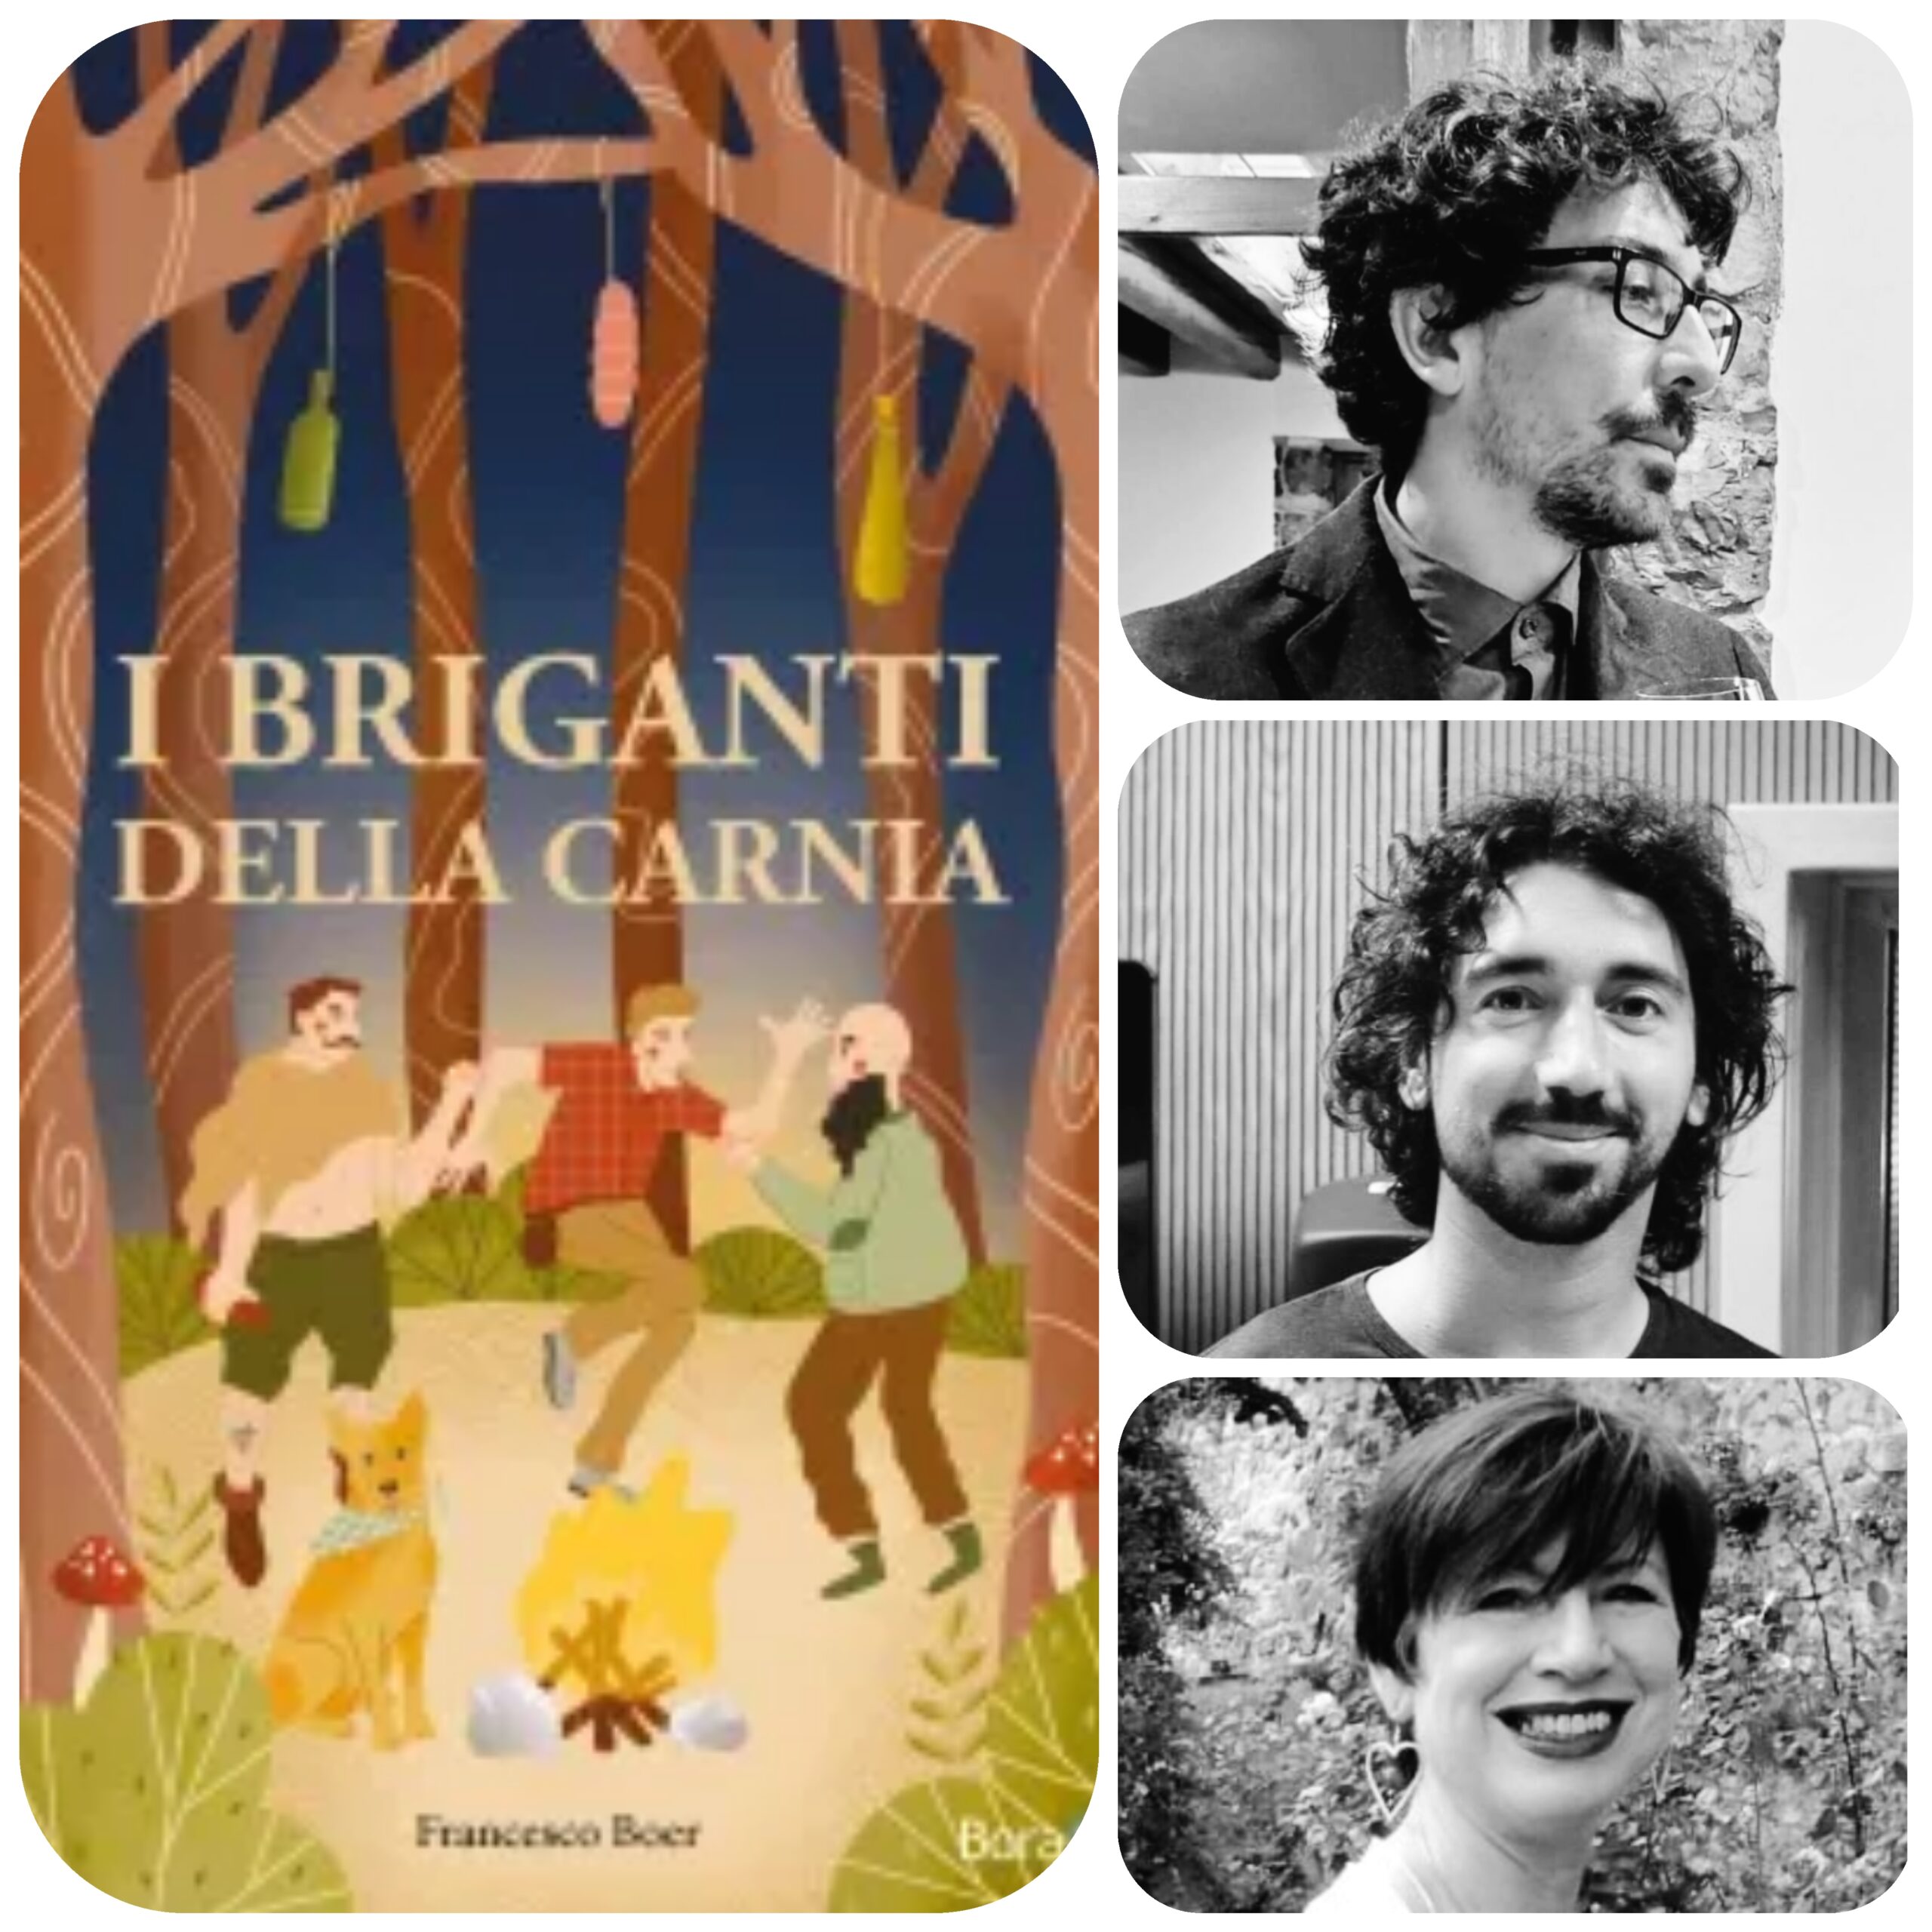 https://lealidellenotizie.it/wp-content/uploads/2022/05/I-briganti-della-Carnia-scaled.jpg